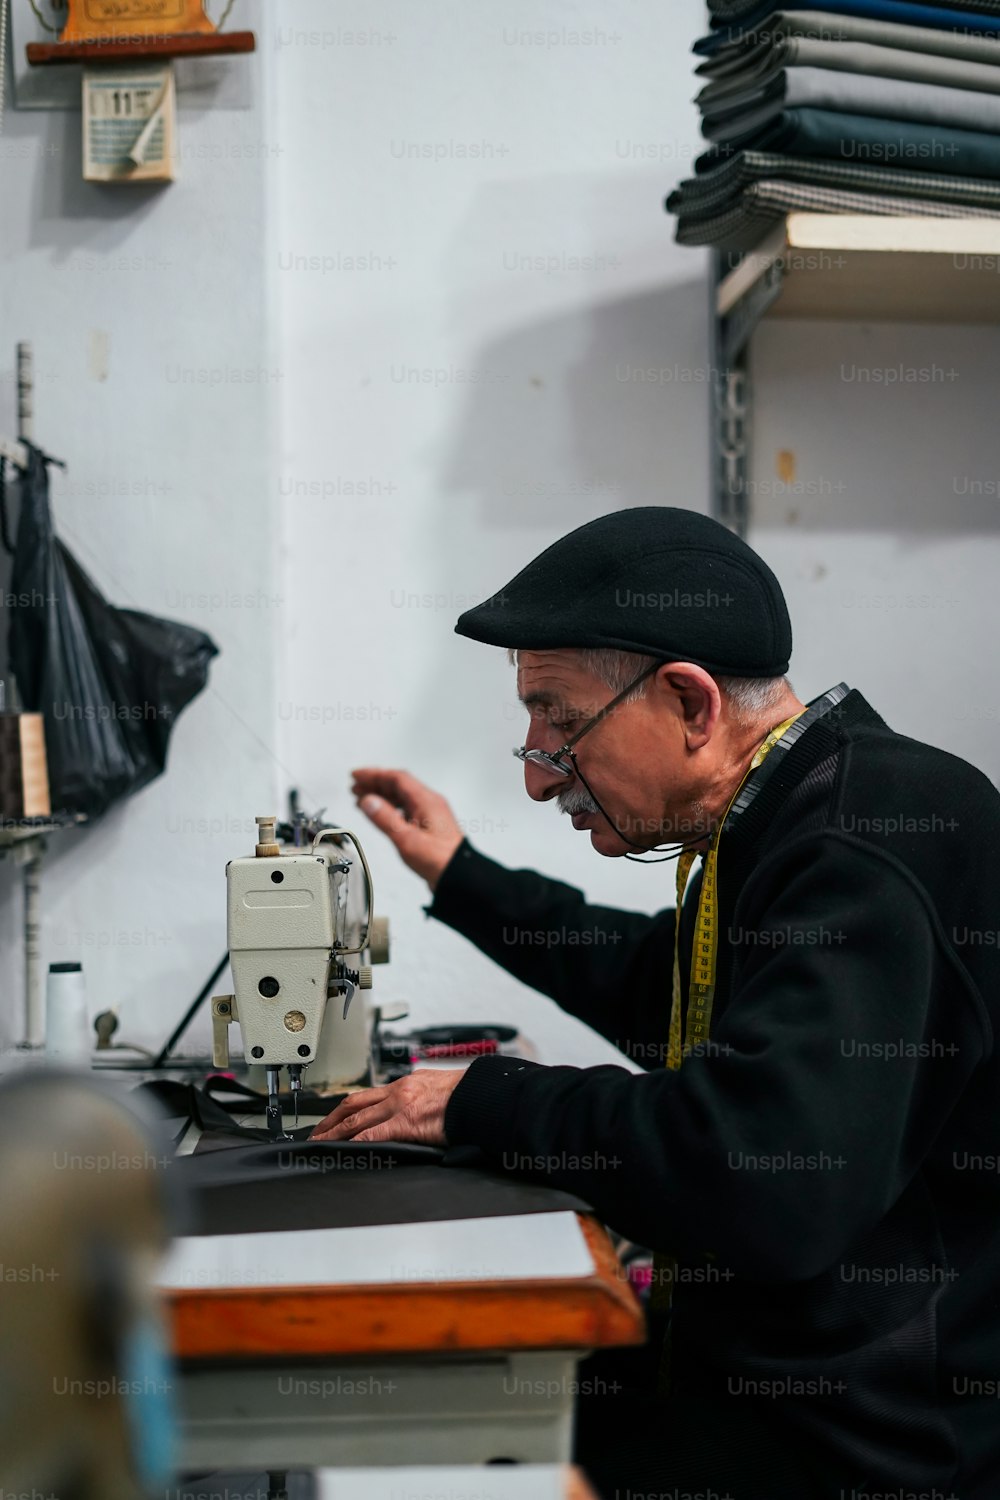 Un vieil homme travaille sur une machine à coudre